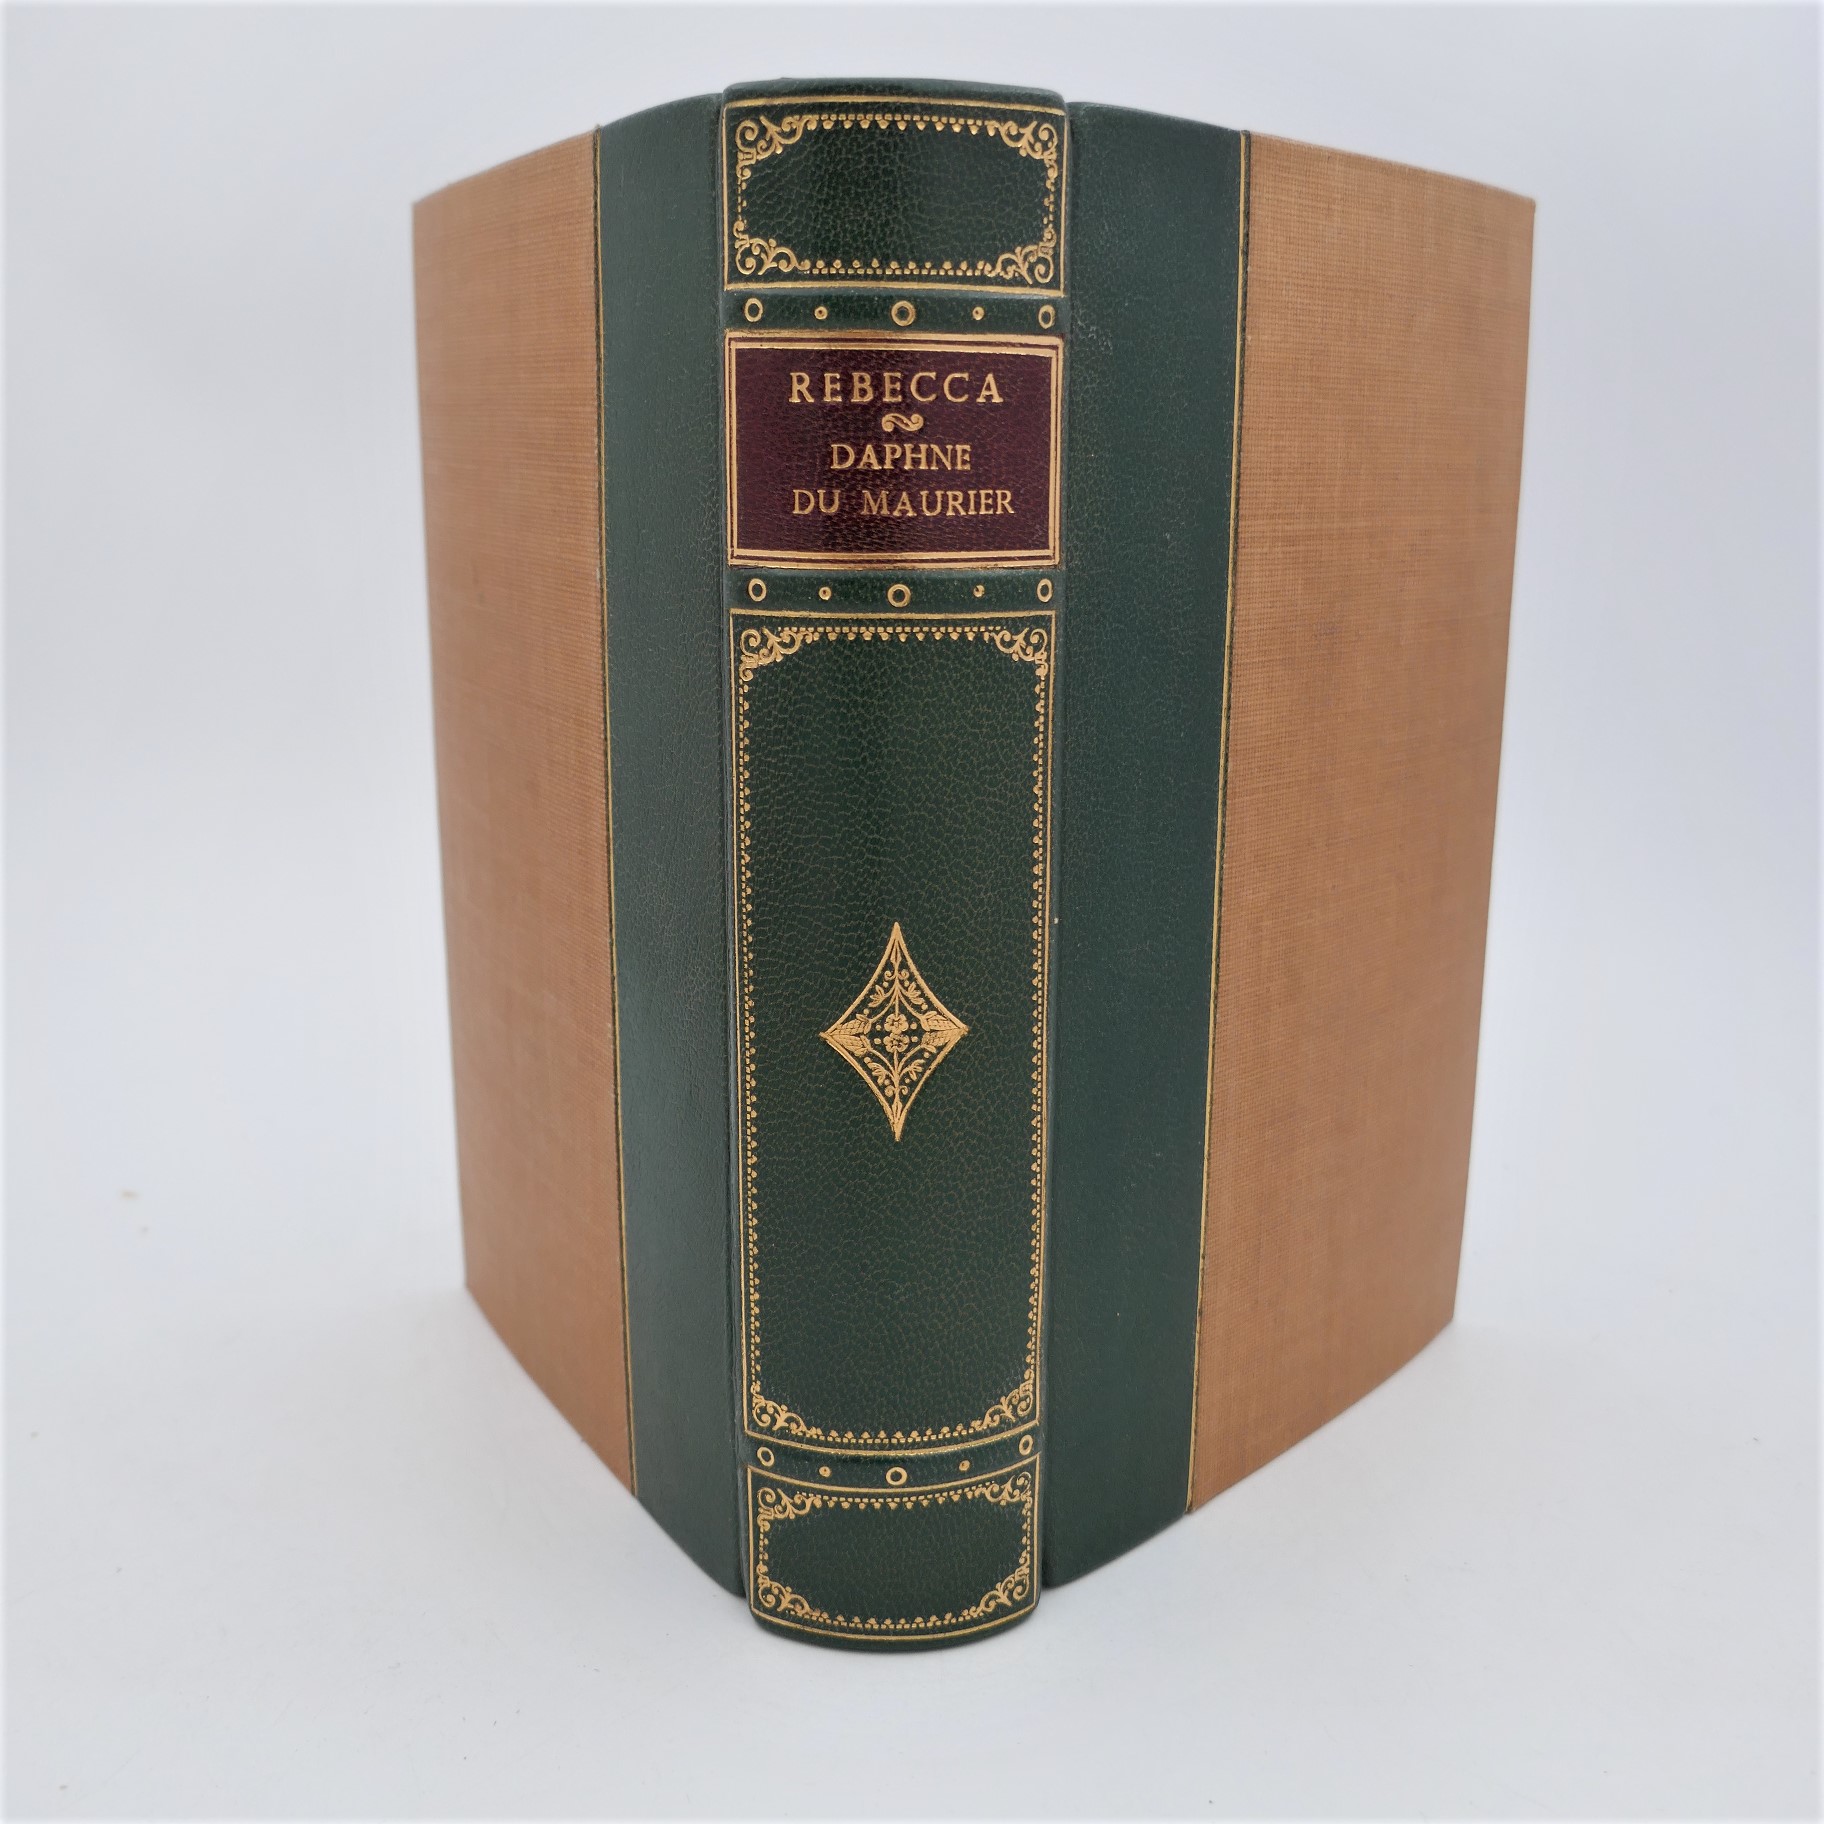 Rebecca. First Edition (1938) - Ulysses Rare Books